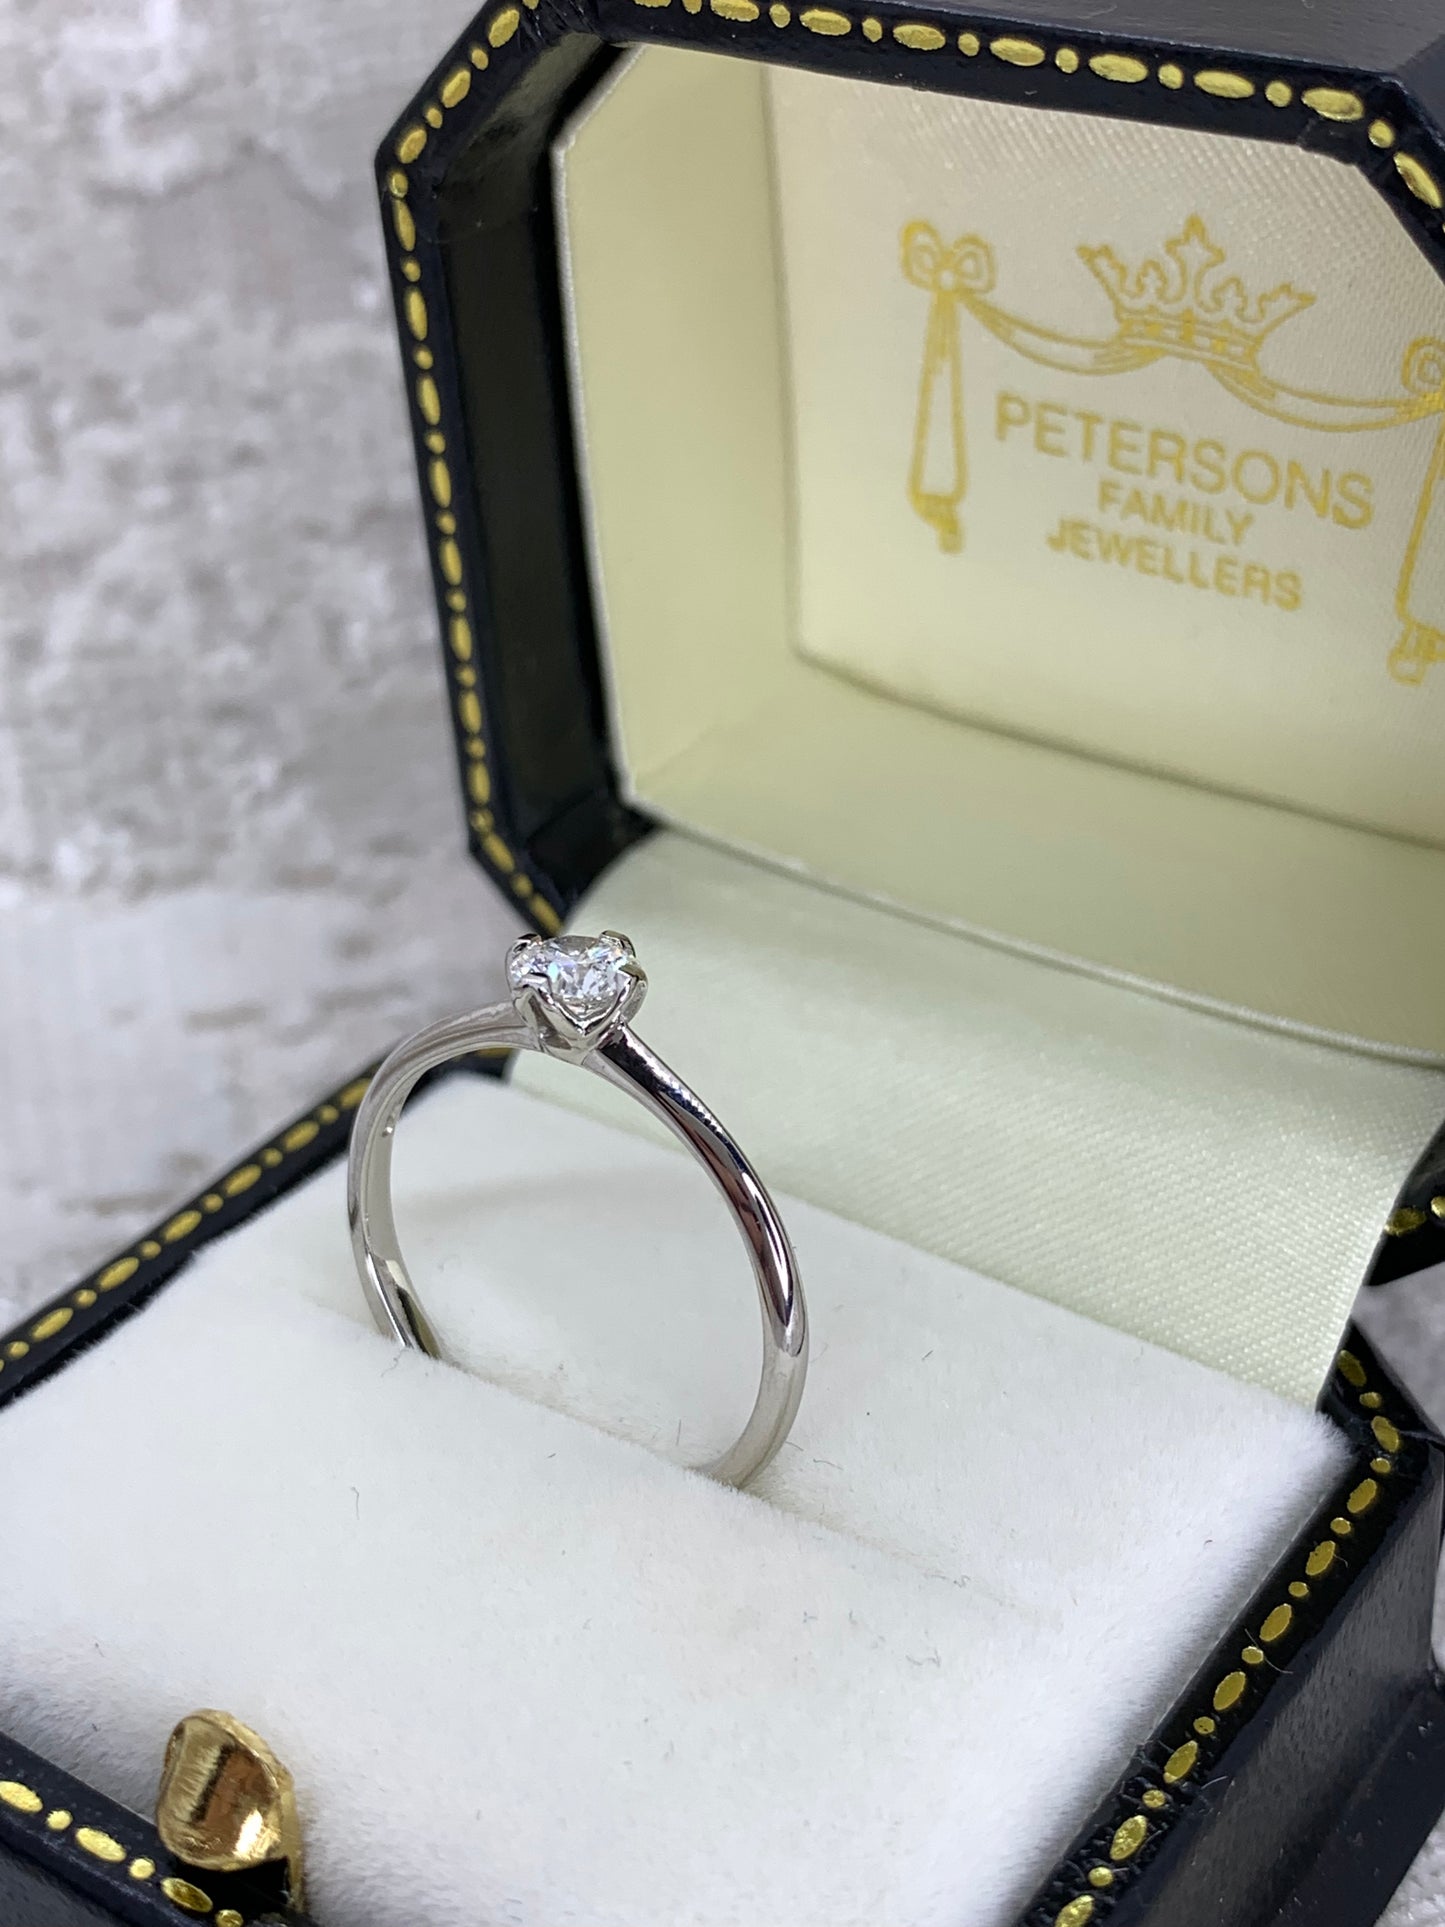 Platinum Diamond Solitaire Ring - Engagement Ring